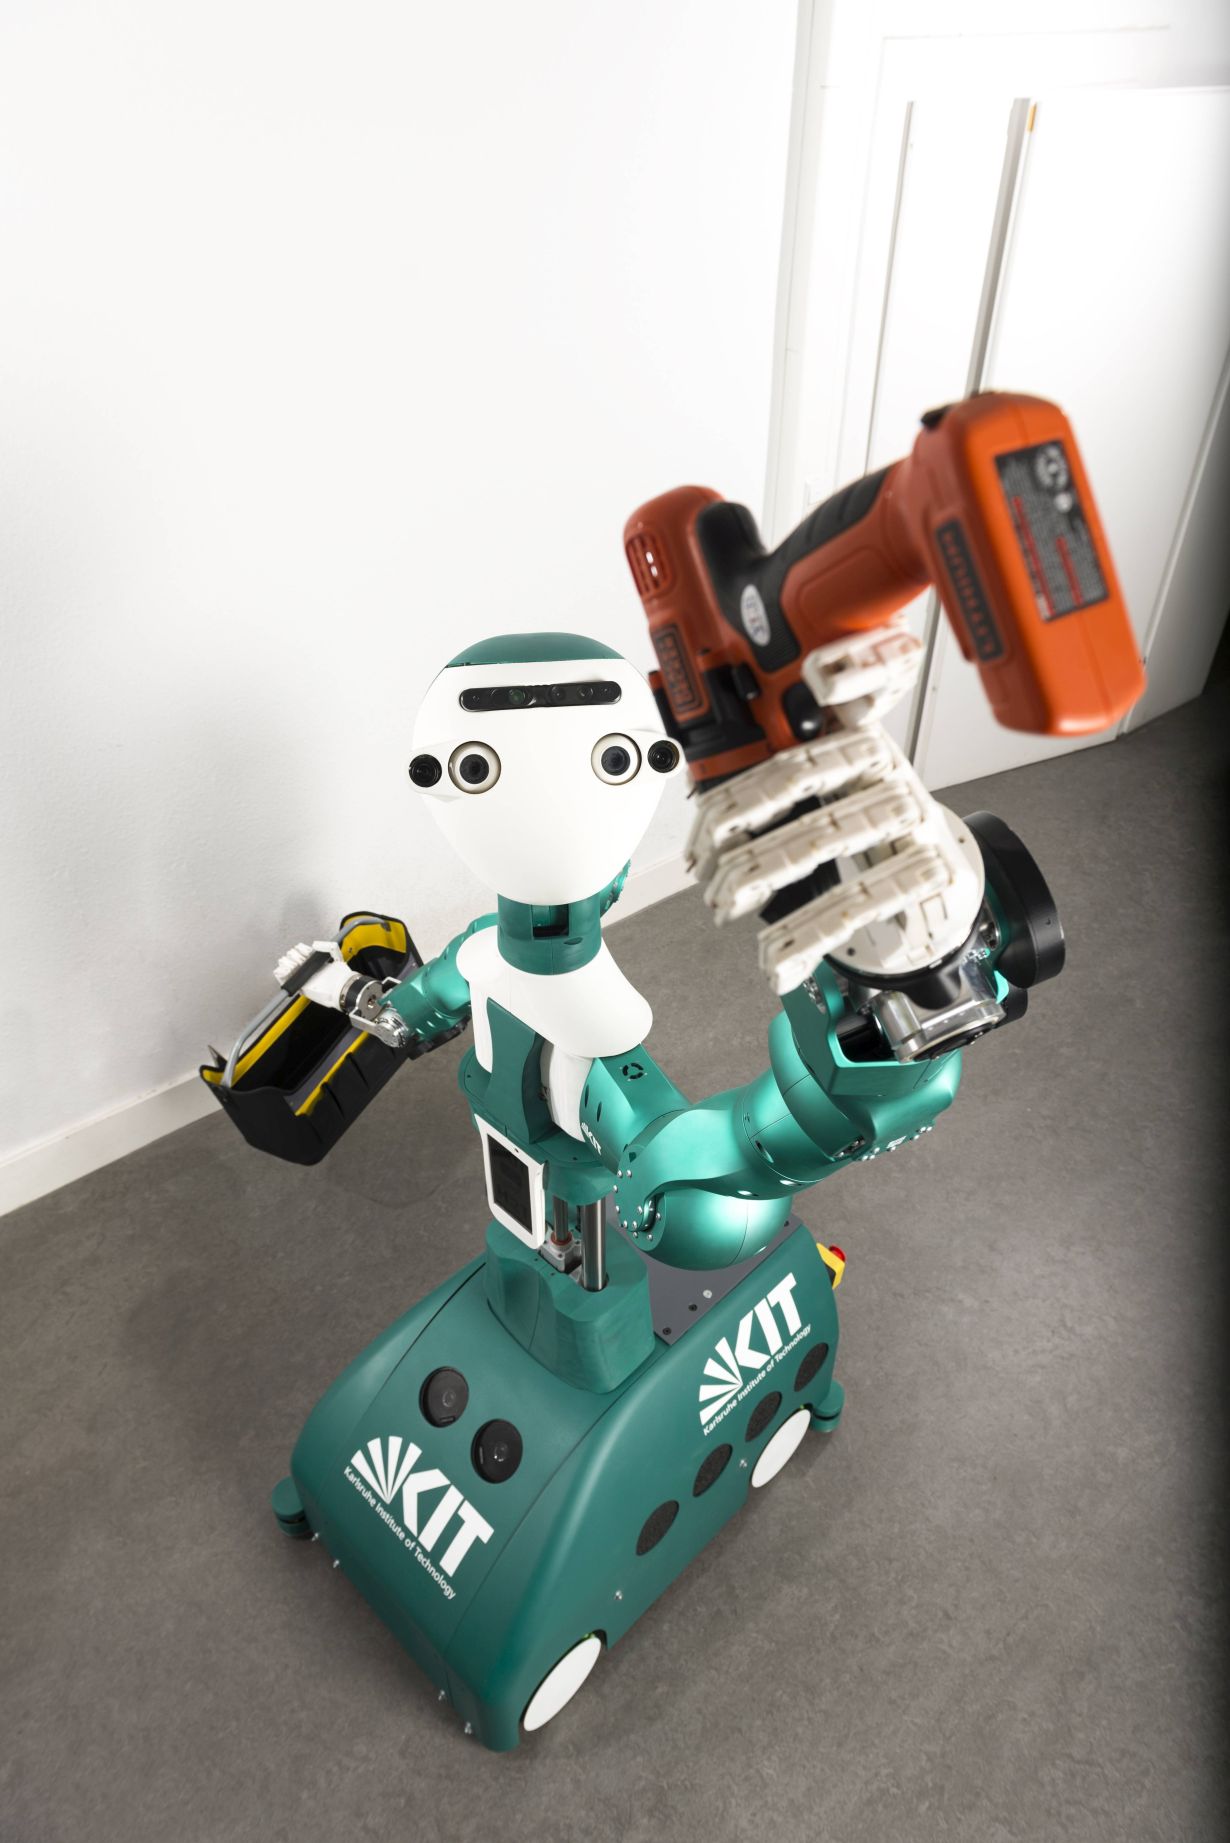 Lernwilliger Helfer: Der Assistenz-Roboter ARMAR 6 kann allein durch Beobachtung neue Fähigkeiten erwerben, Nutzer unterstützen und etwa Werkzeug reichen. (Bild:KIT/Laila Tkotz)